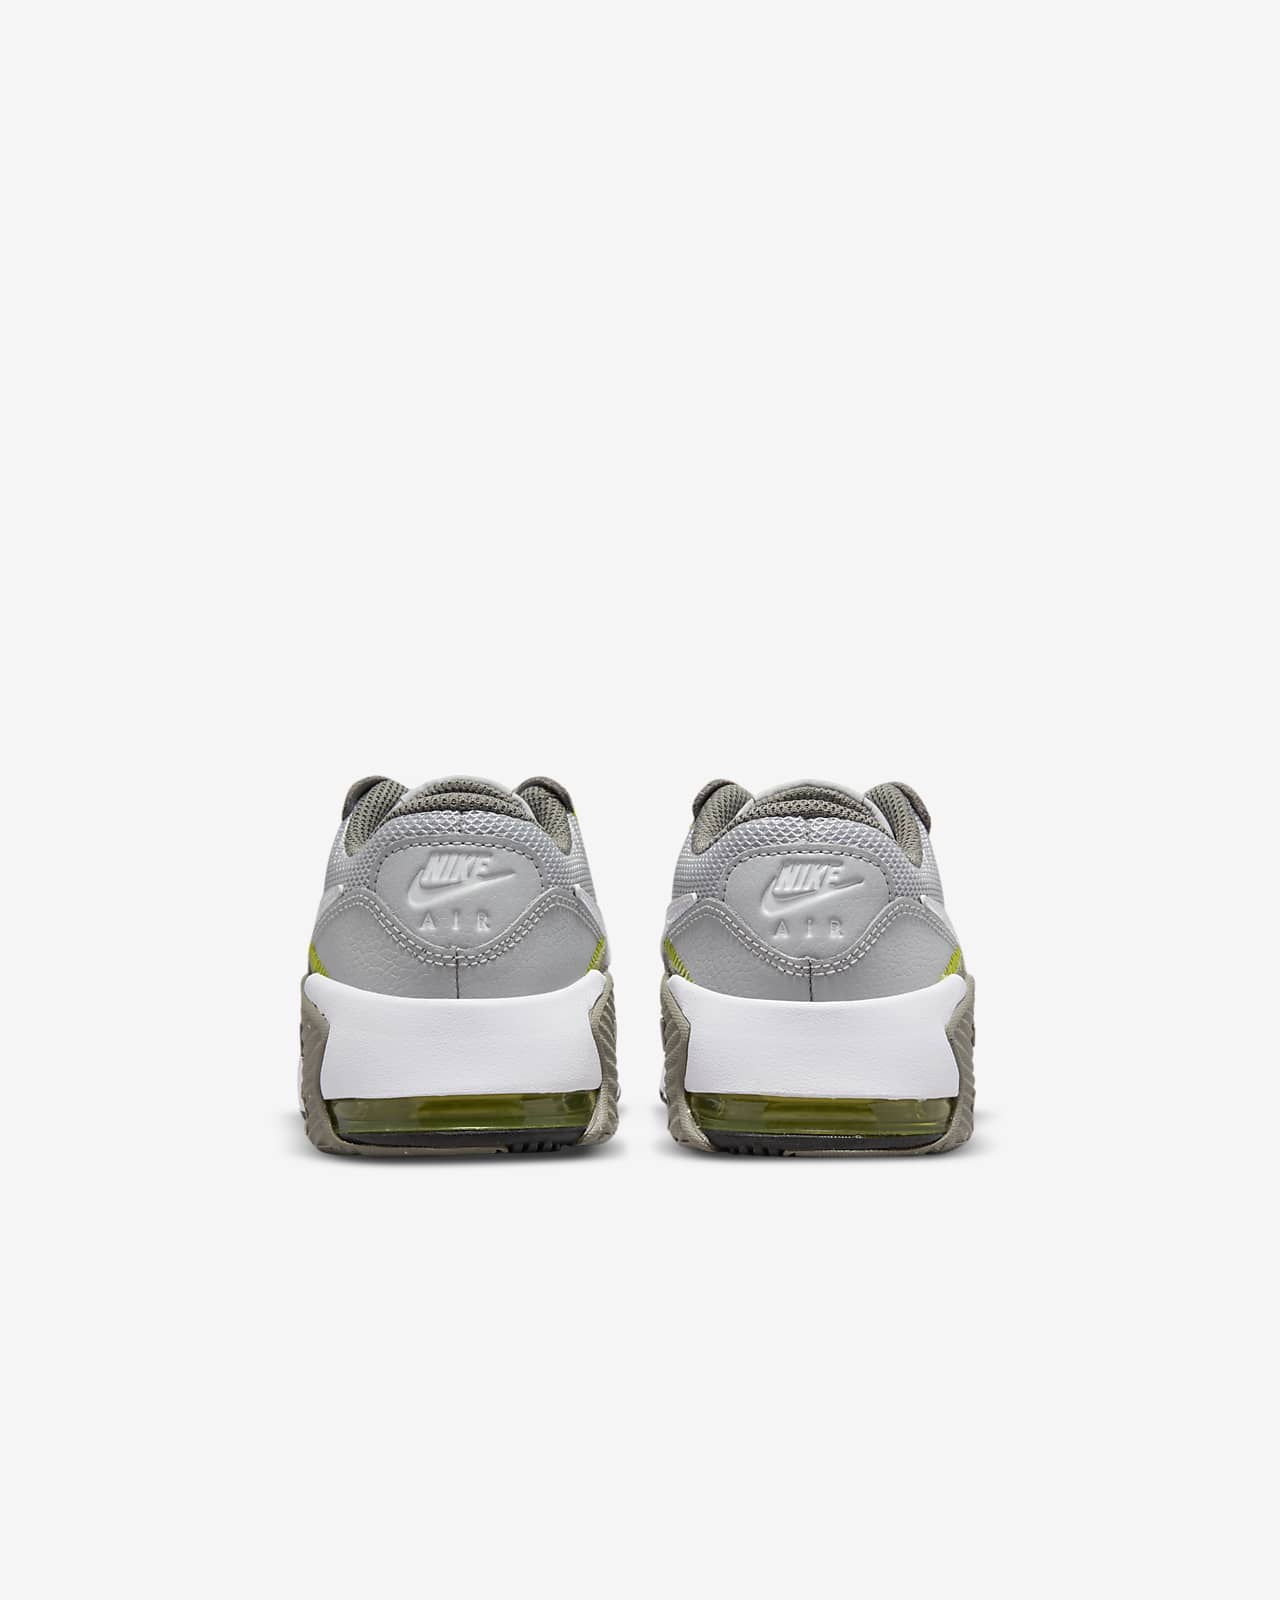 Calzado para niños talla pequeña Nike Air Max Excee. Nike.com روج هدى بيوتي